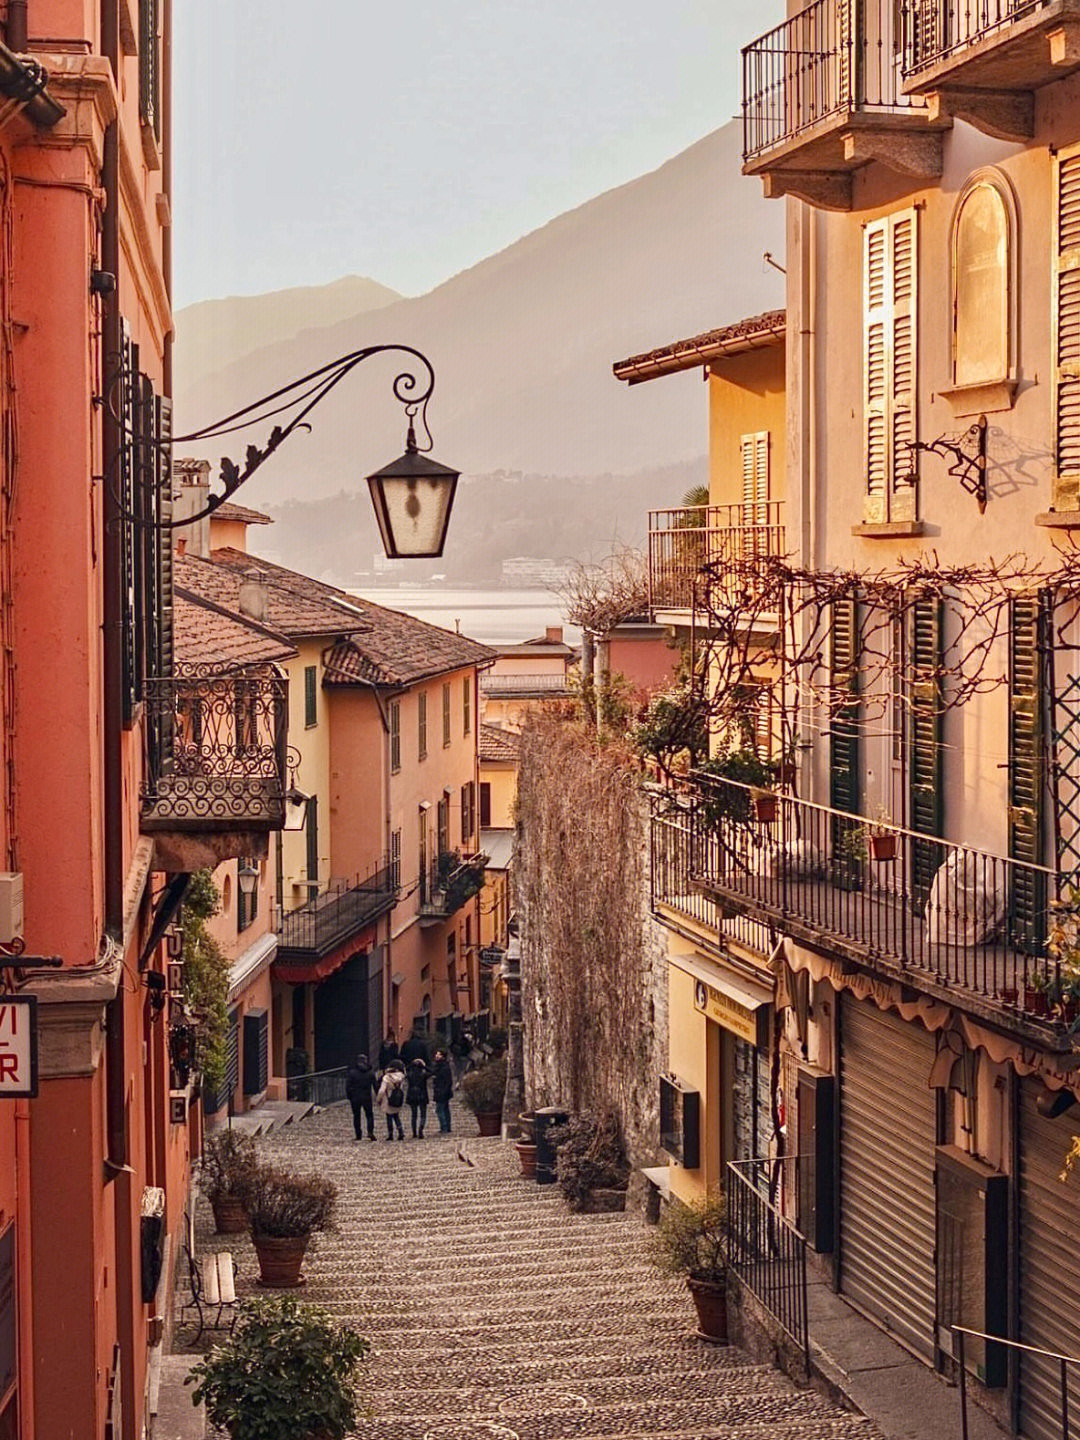 意大利旅行🇮🇹科莫湖明珠 超美中世纪小镇